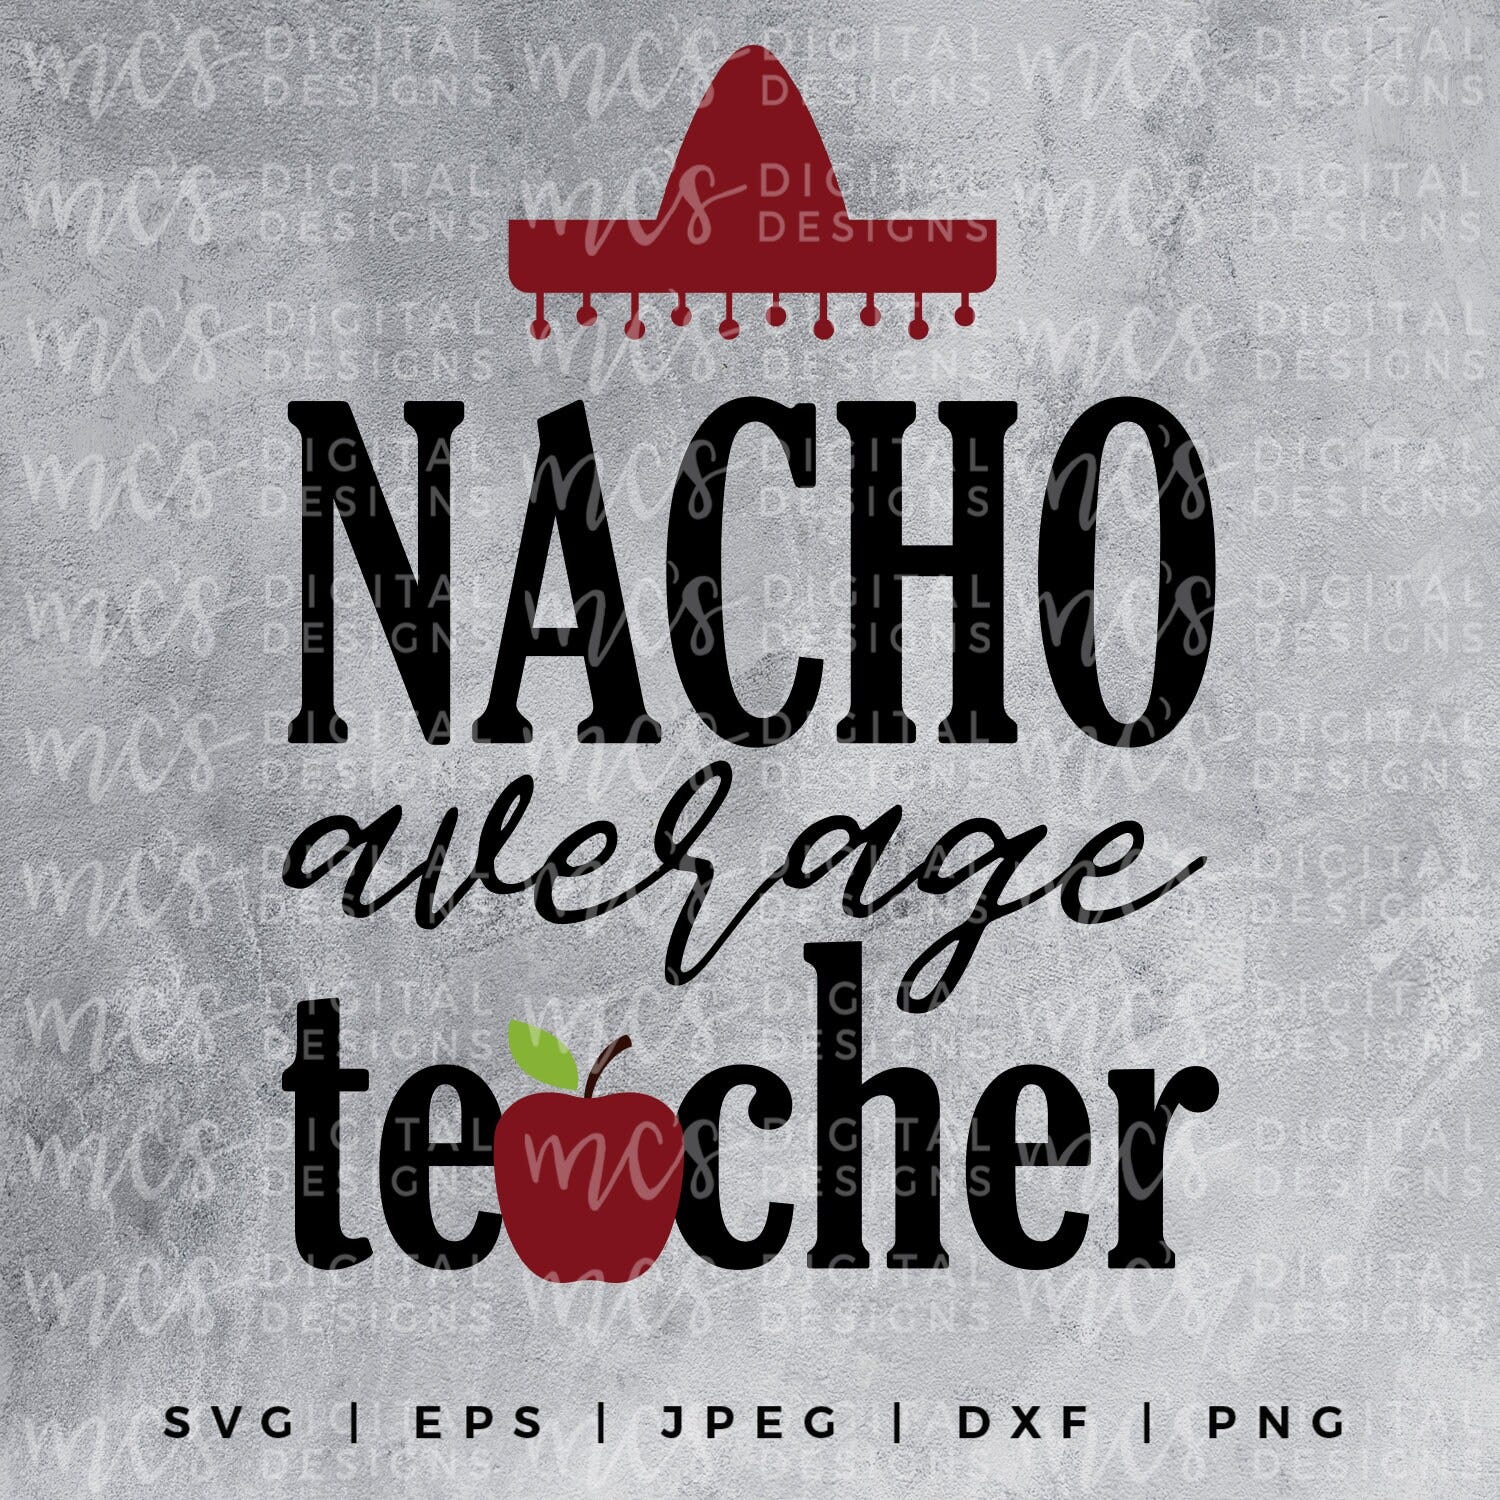 DIGITAL DOWNLOAD; Nacho Average Teacher, sombrero svg, Teacher SVG, Teacher design, Apple designs for teachers, decals